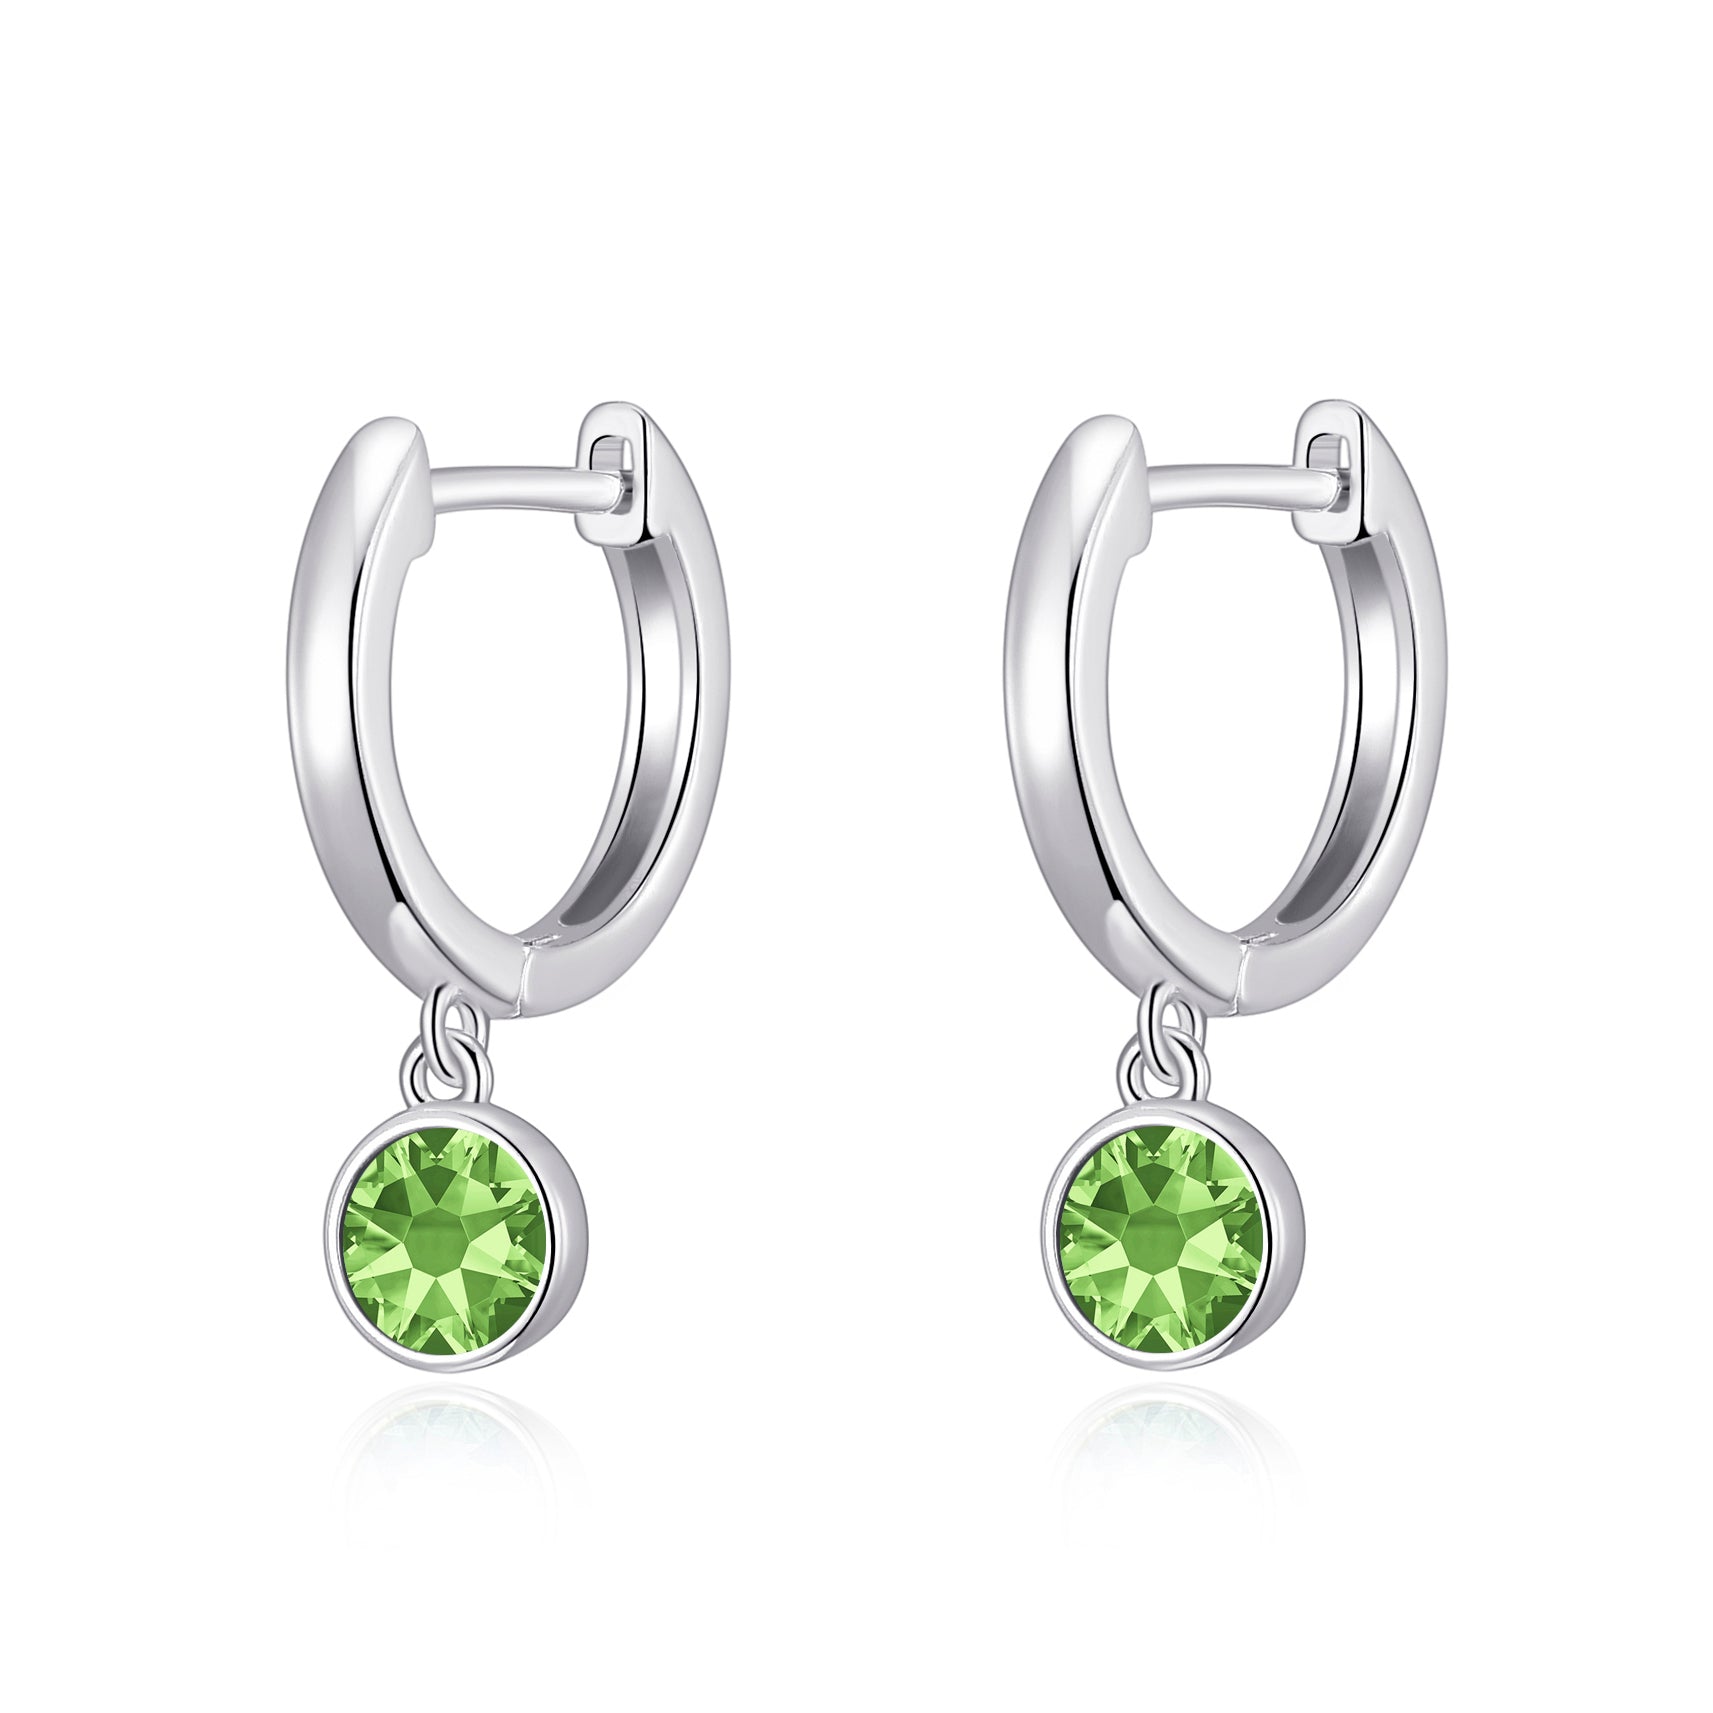 August Birthstone Hoop Earrings Created with Peridot Zircondia® Crystals